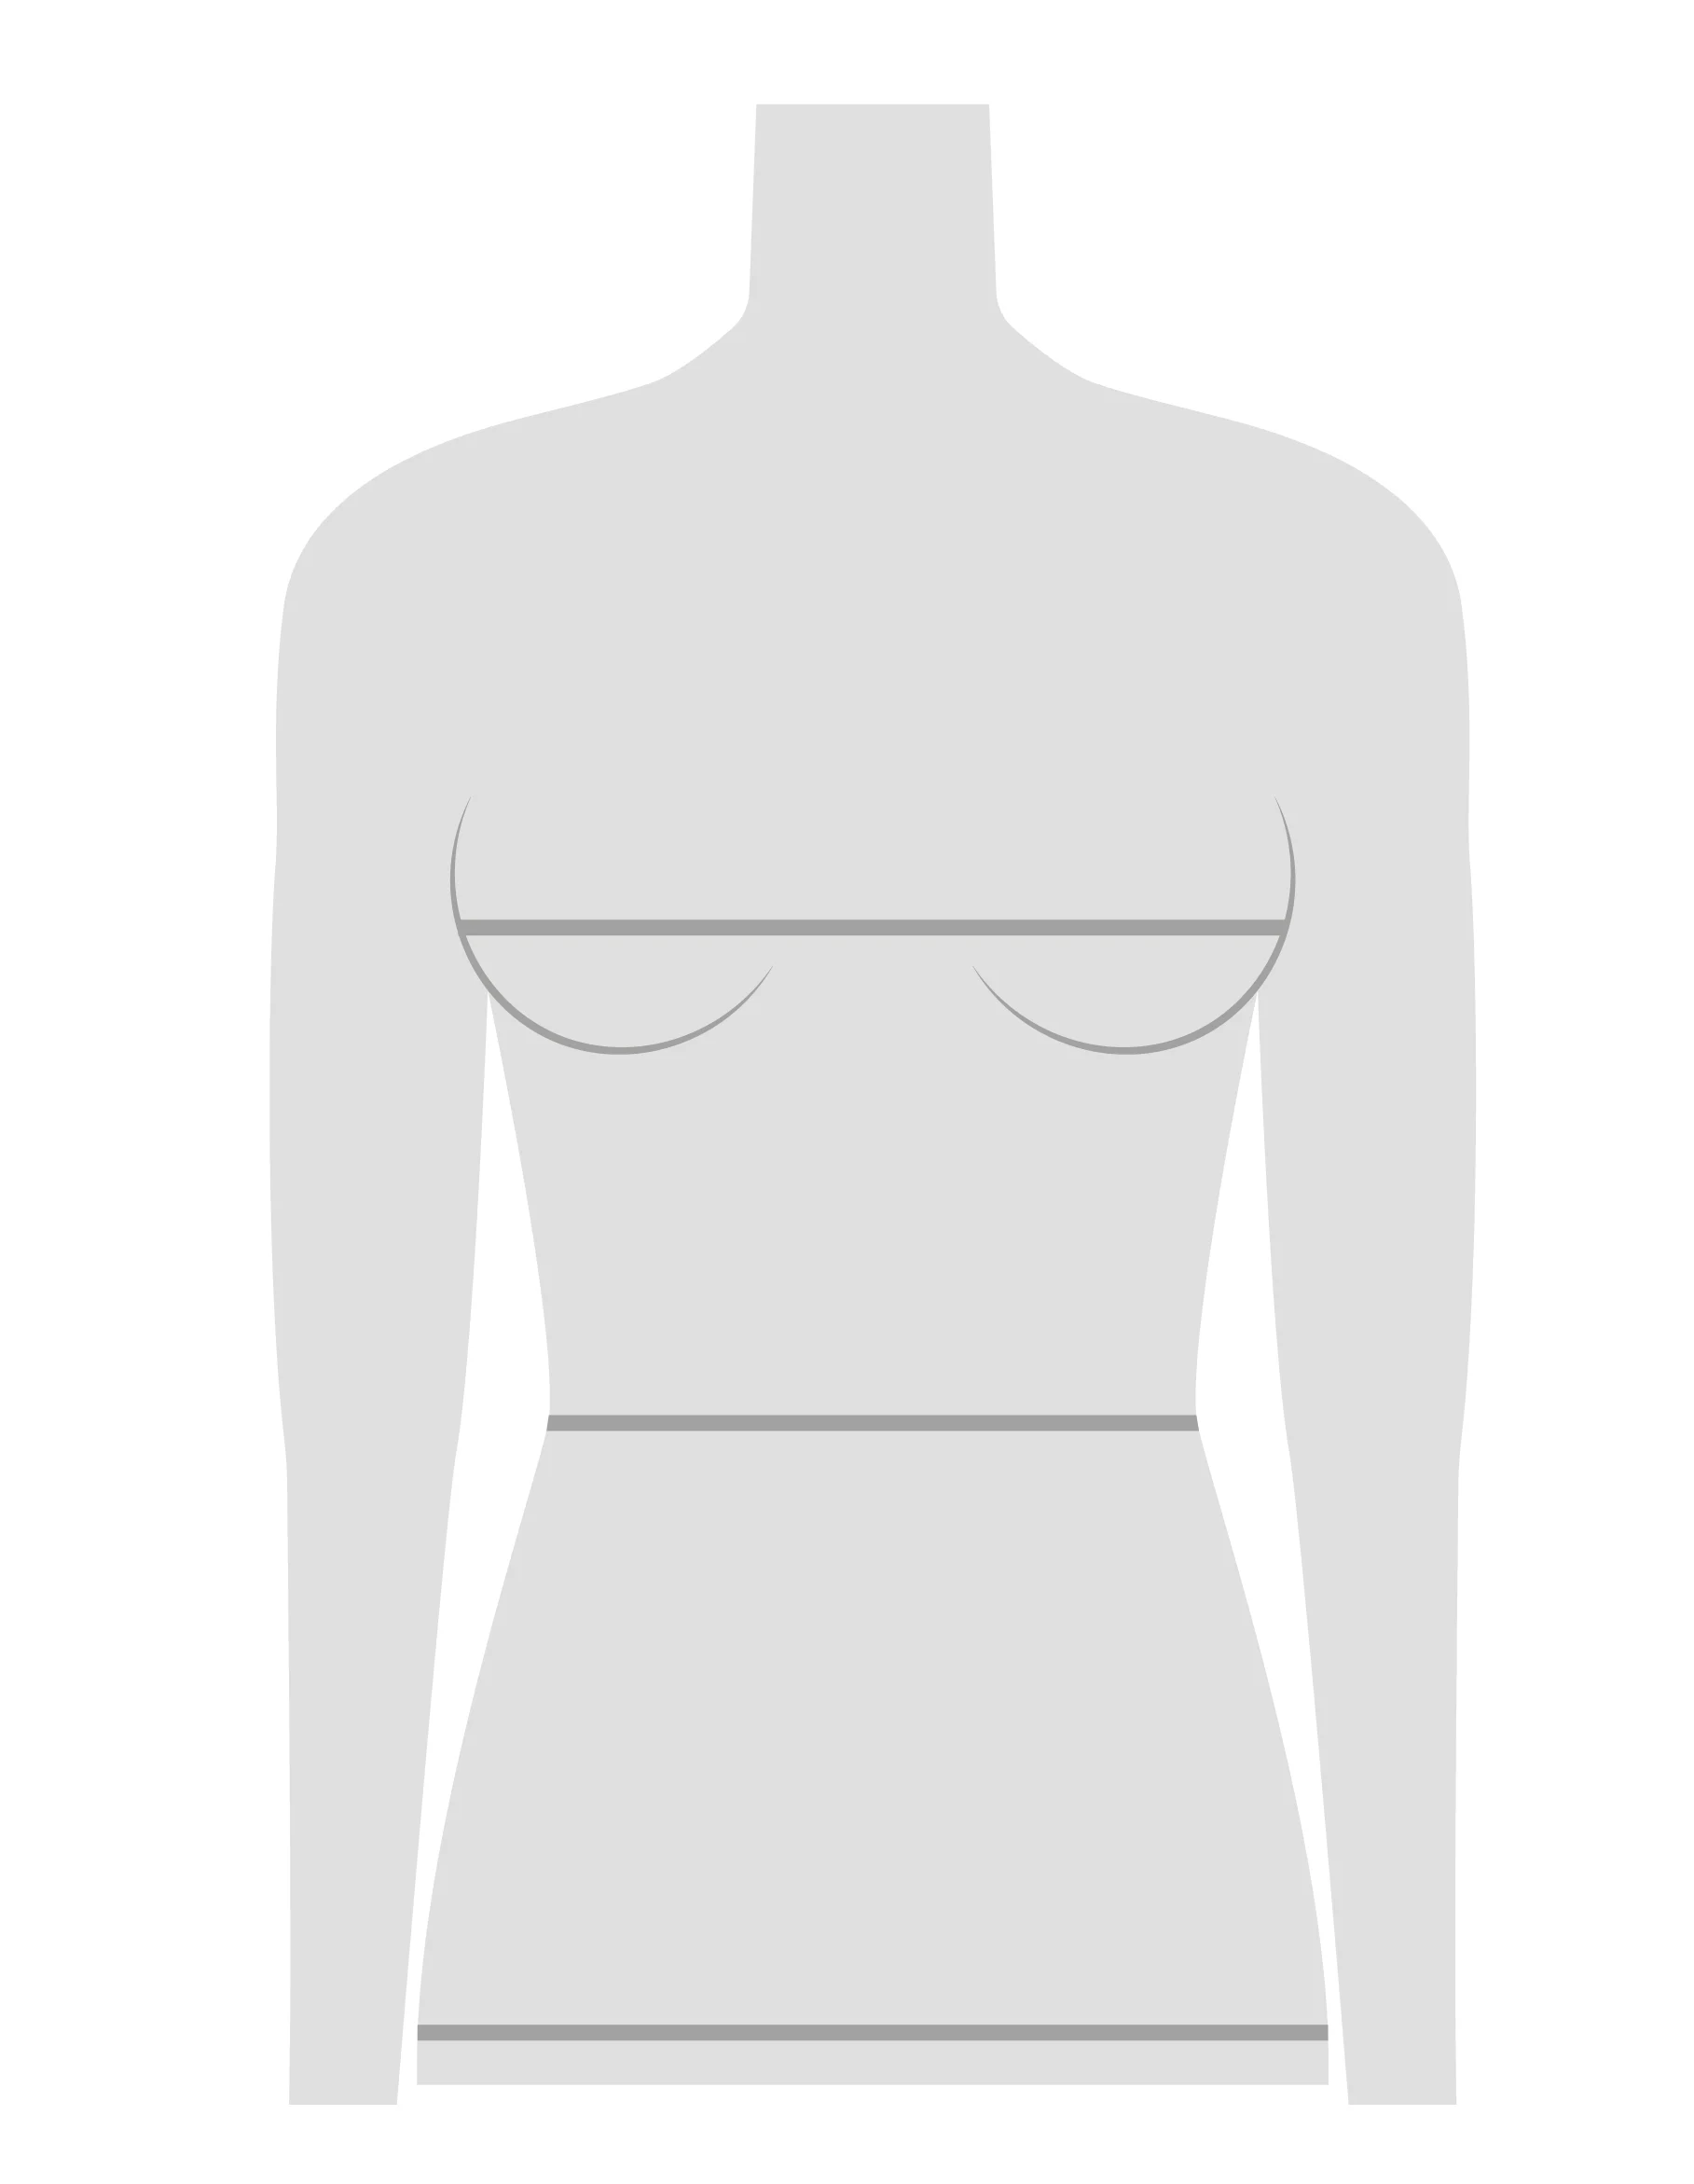 Une silhouette d'un mannequin avec des lignes sur le buste, la taille et les hanches indiquant où mesurer.